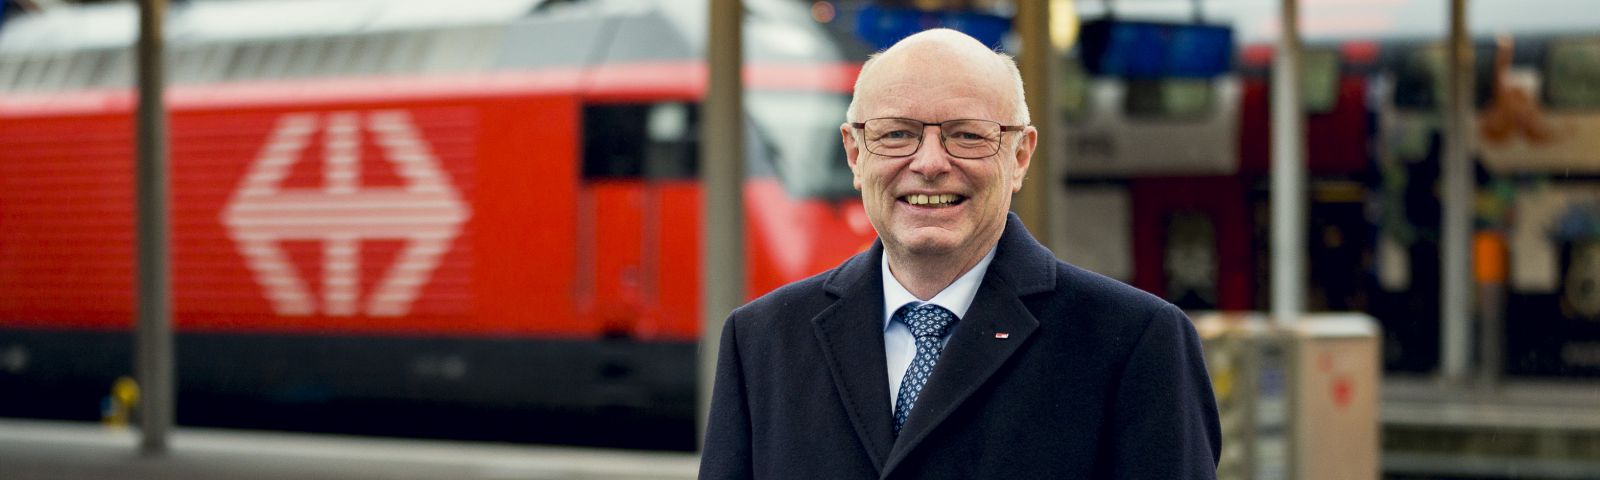 Vincent Ducrot: «Der CEO allein macht nie die Eisenbahn aus» | SBB ...